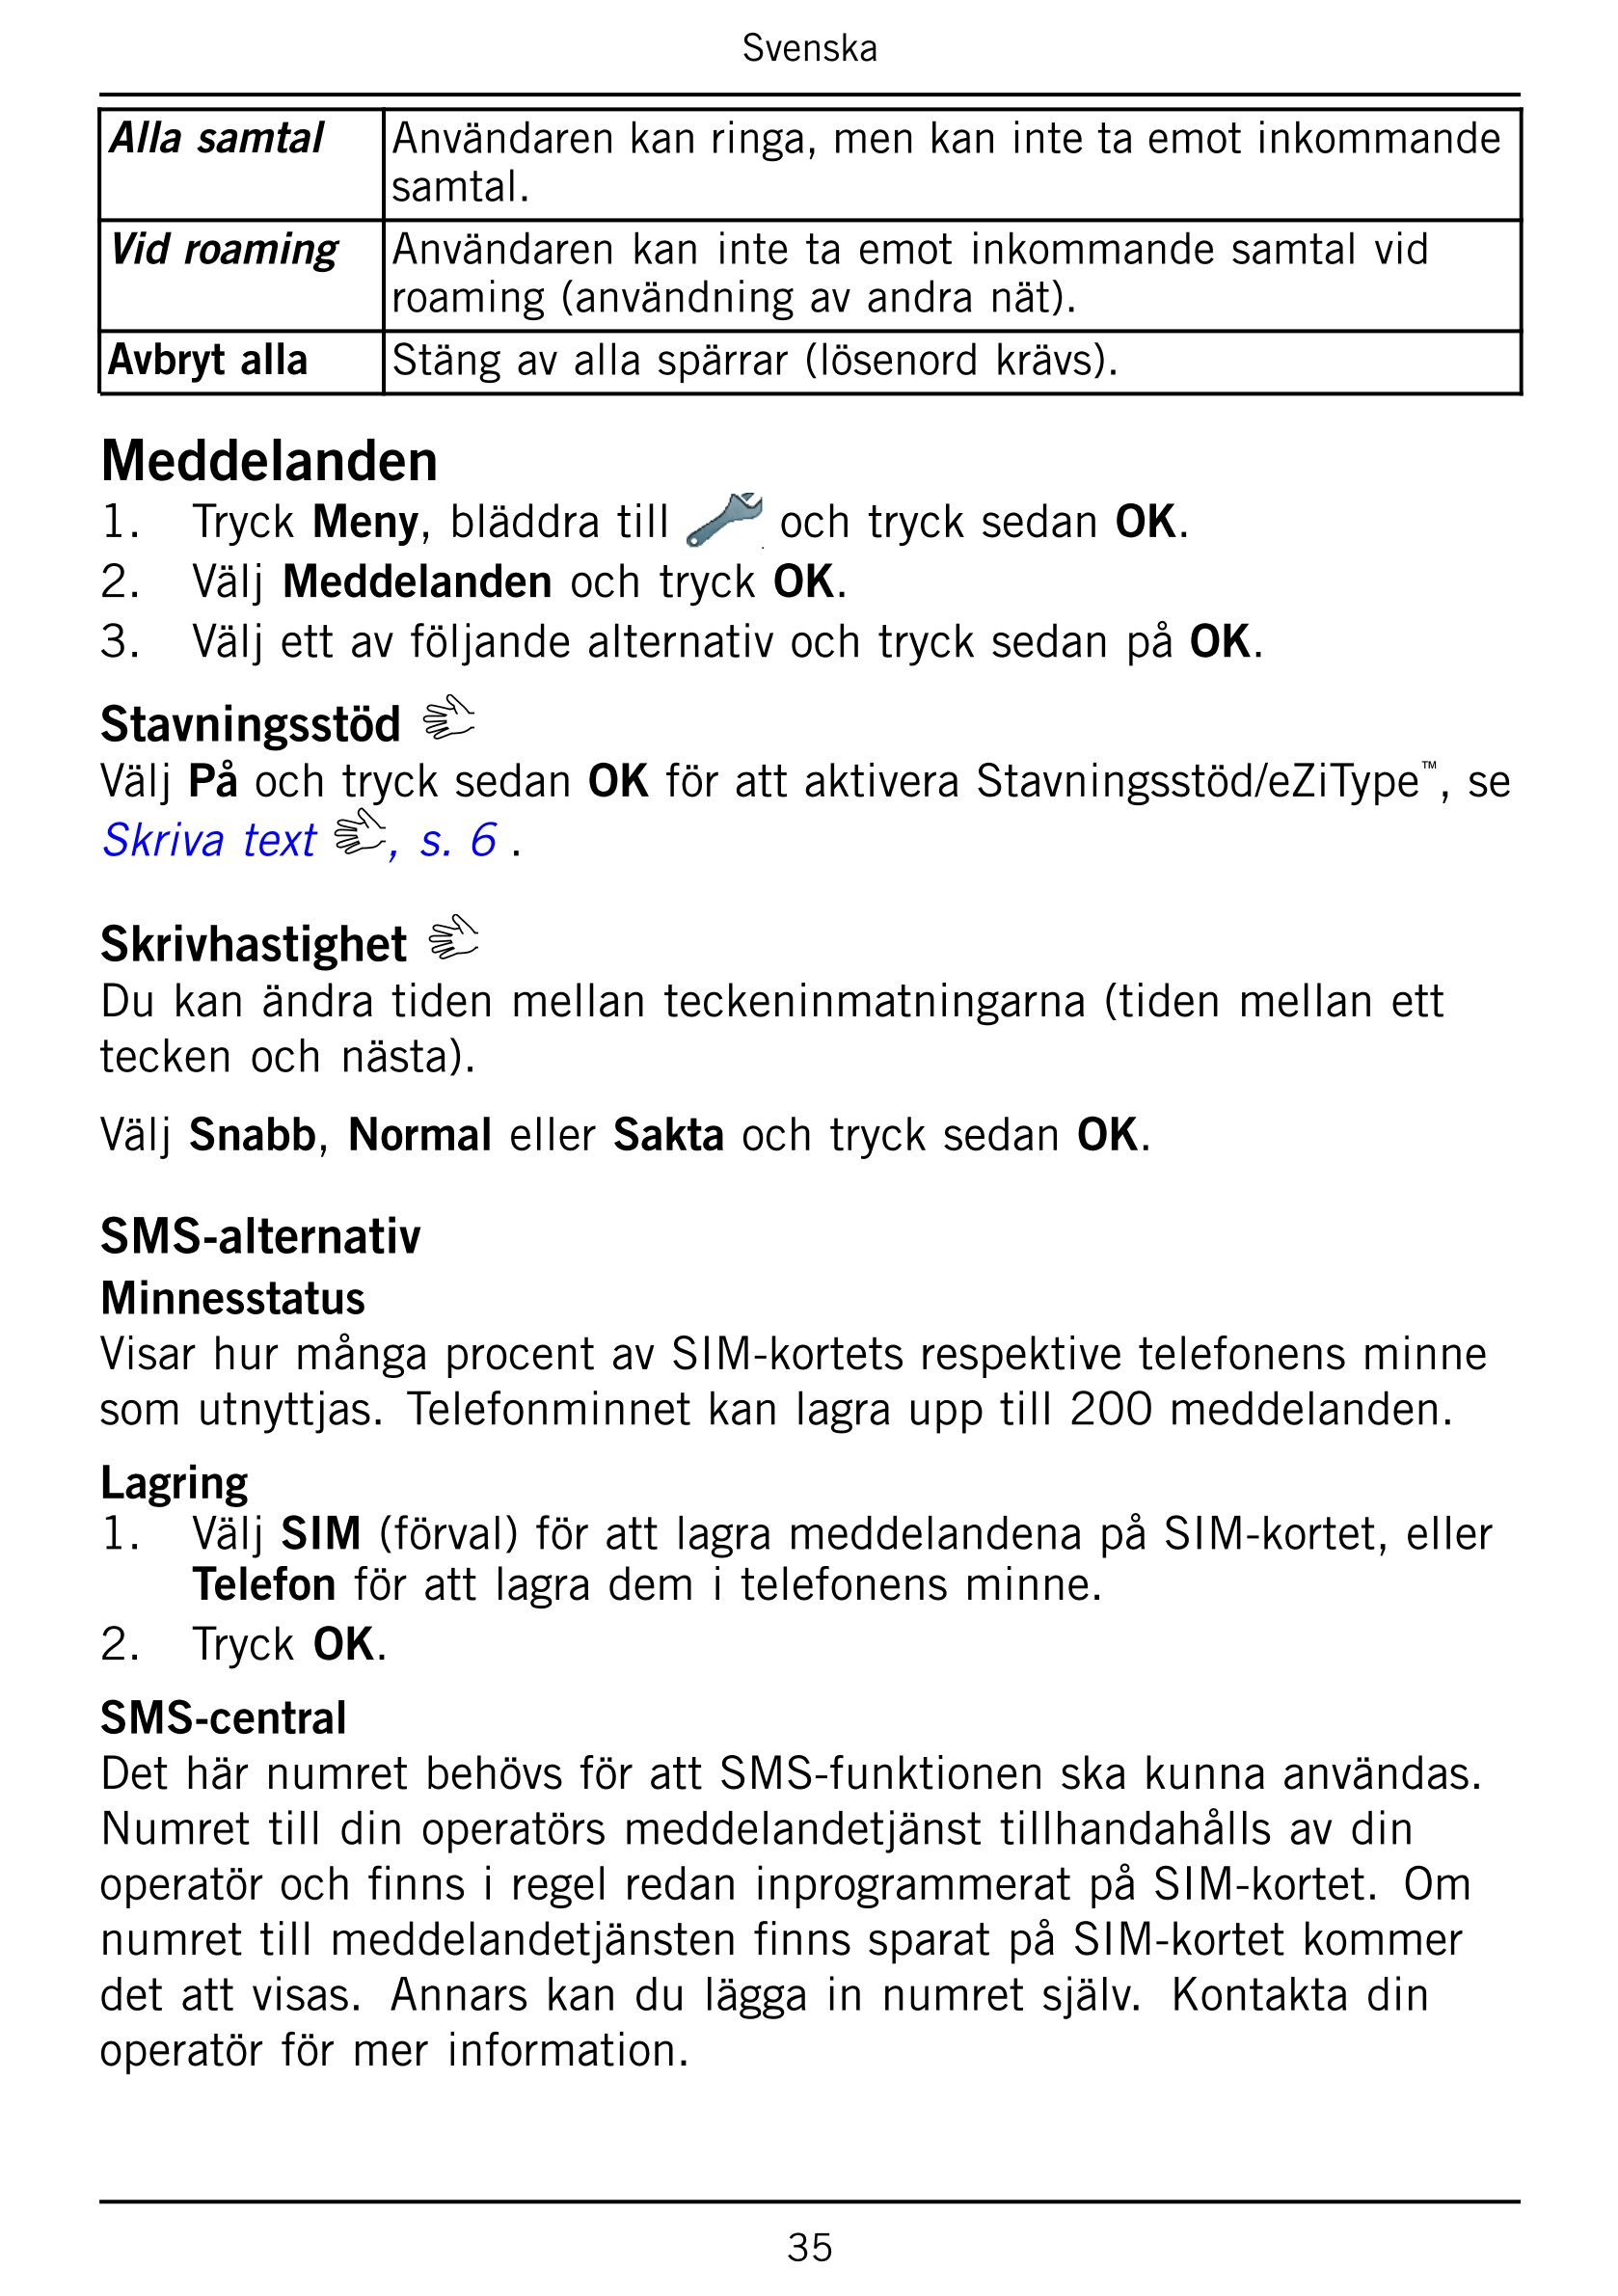 Svenska
Alla samtal Användaren kan ringa, men kan inte ta emot inkommande
samtal.
Vid roaming Användaren kan inte ta emot inkomm